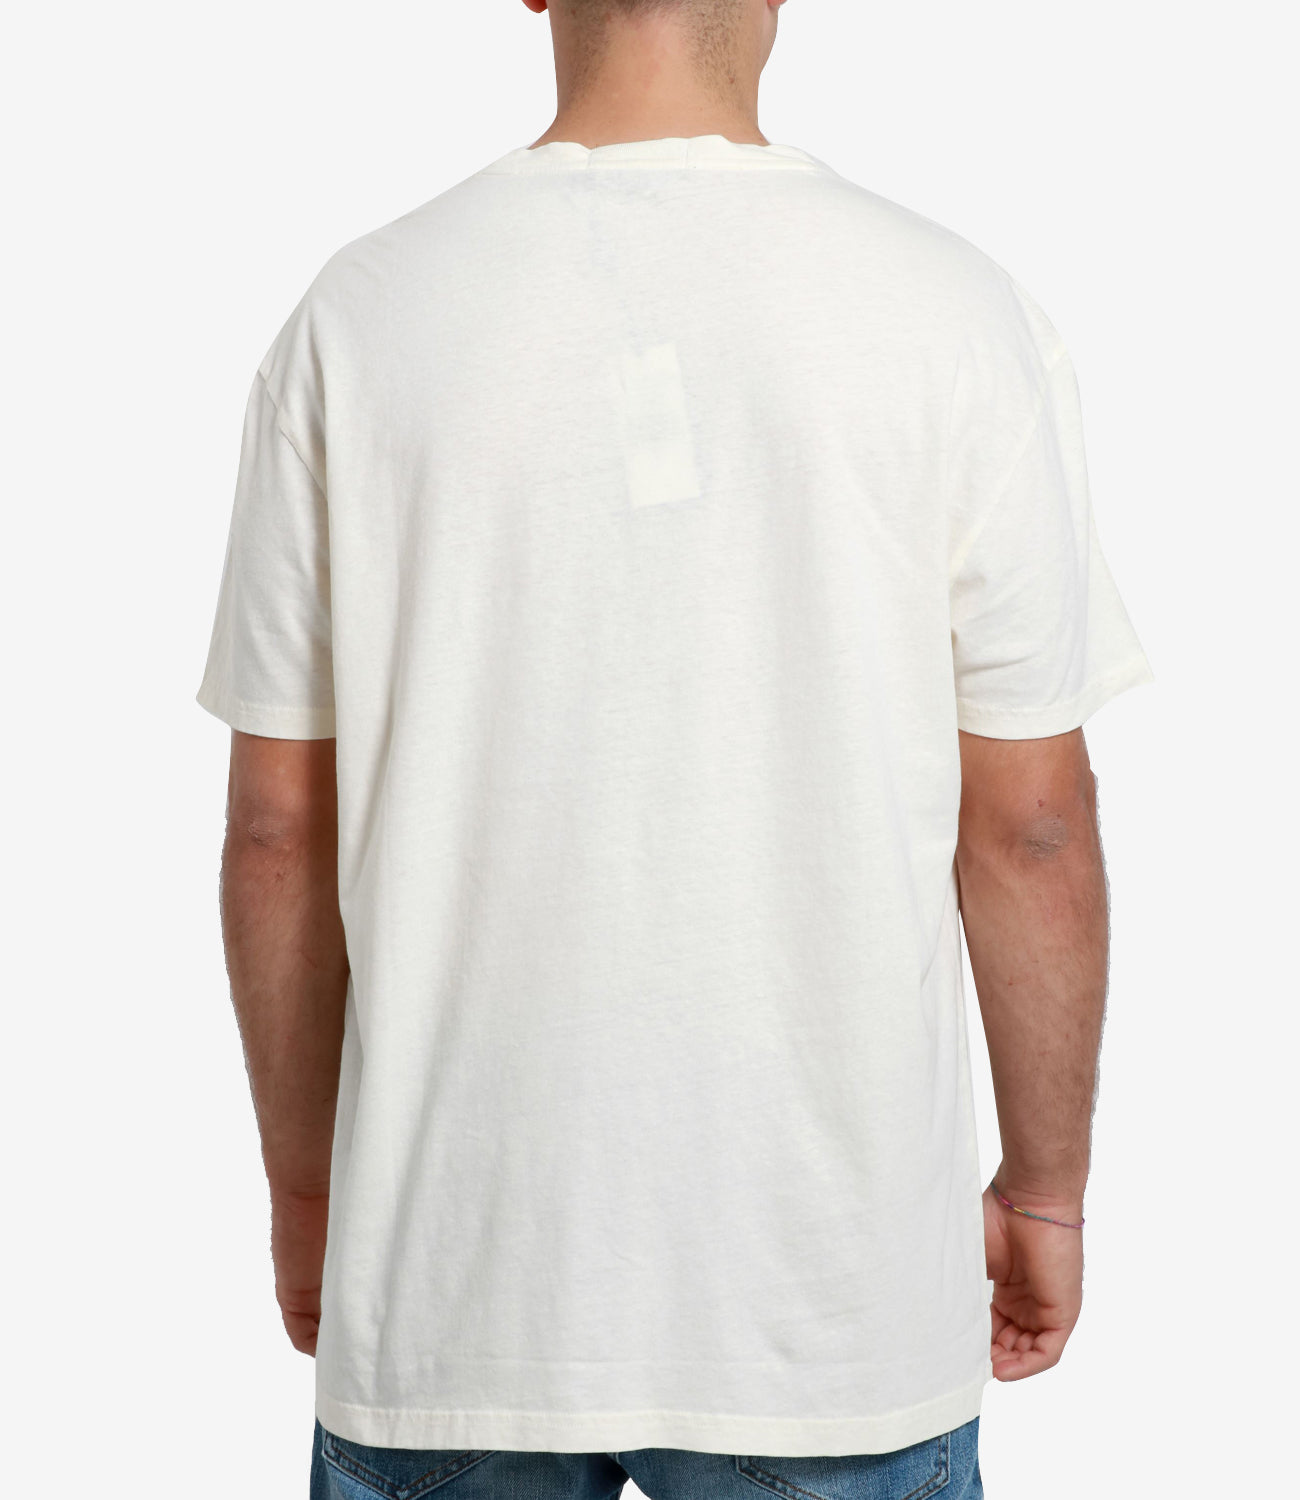 Polo Ralph Lauren | T-Shirt Crema